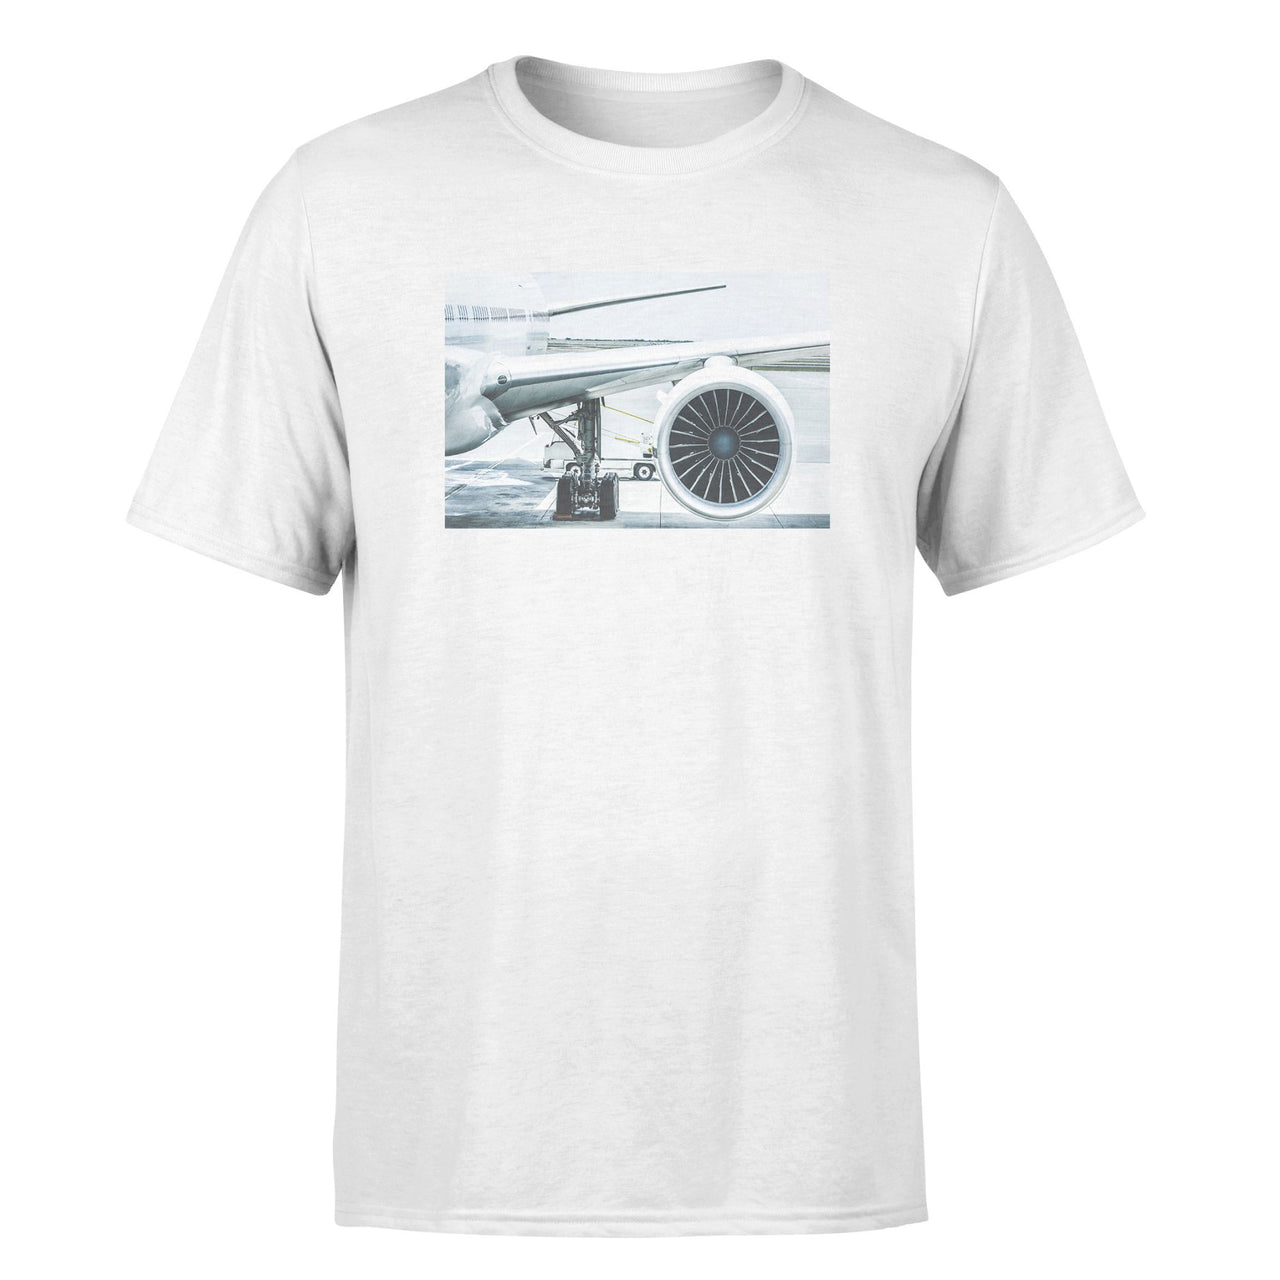 Amazing Aircraft & Engine Designed T-Shirts